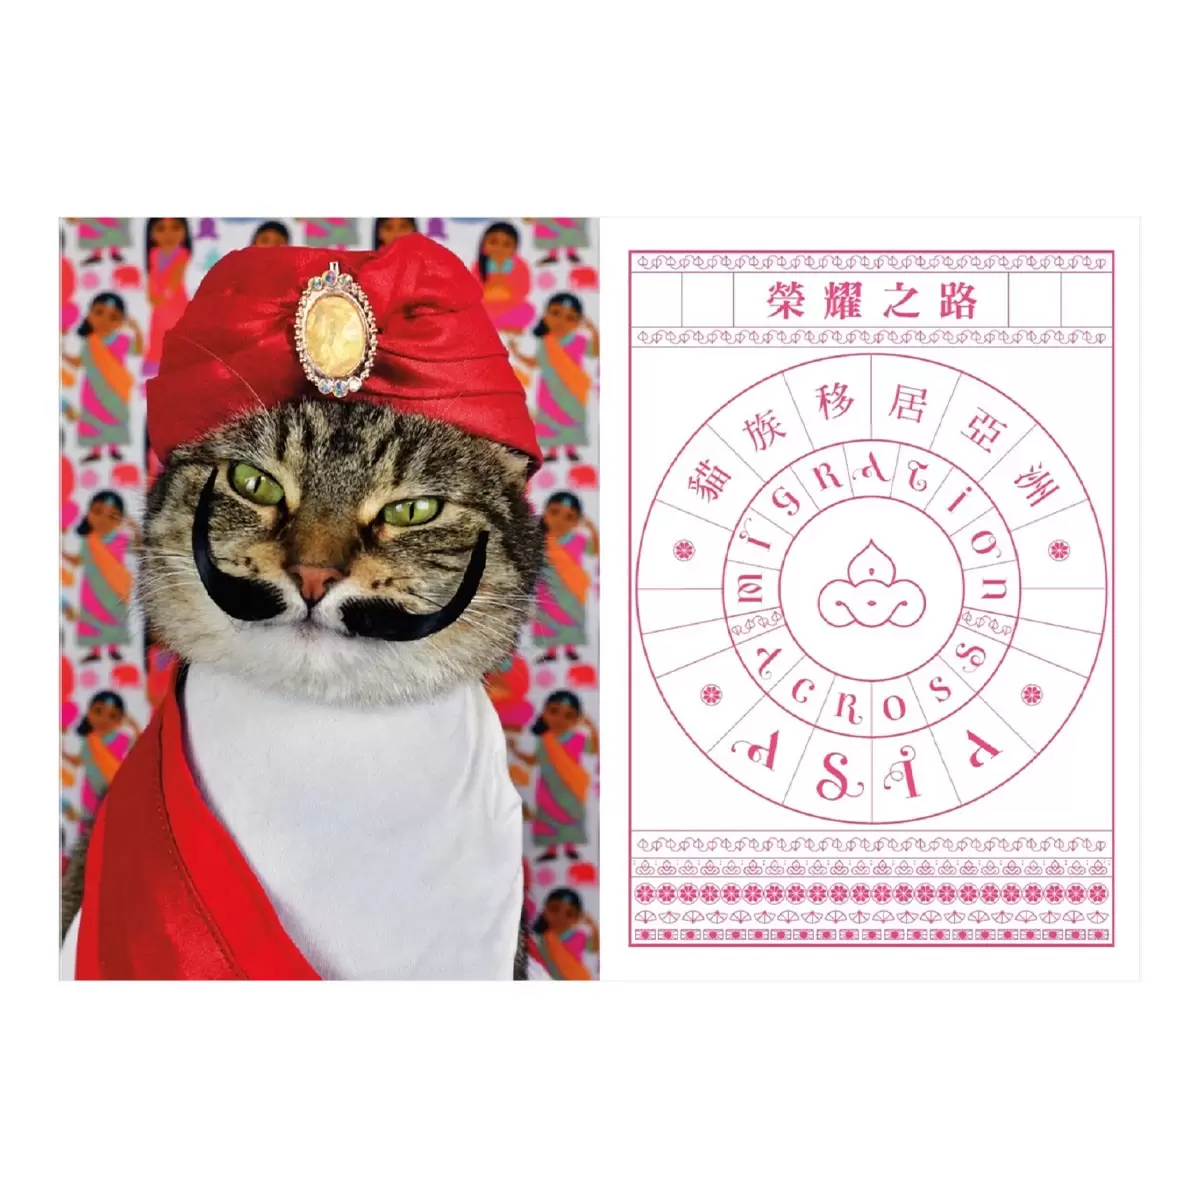 喵皇正史：從史前到太空時代，魅力征服全世界的貓族大歷史【首刷限量雙面彩印年曆書衣版】